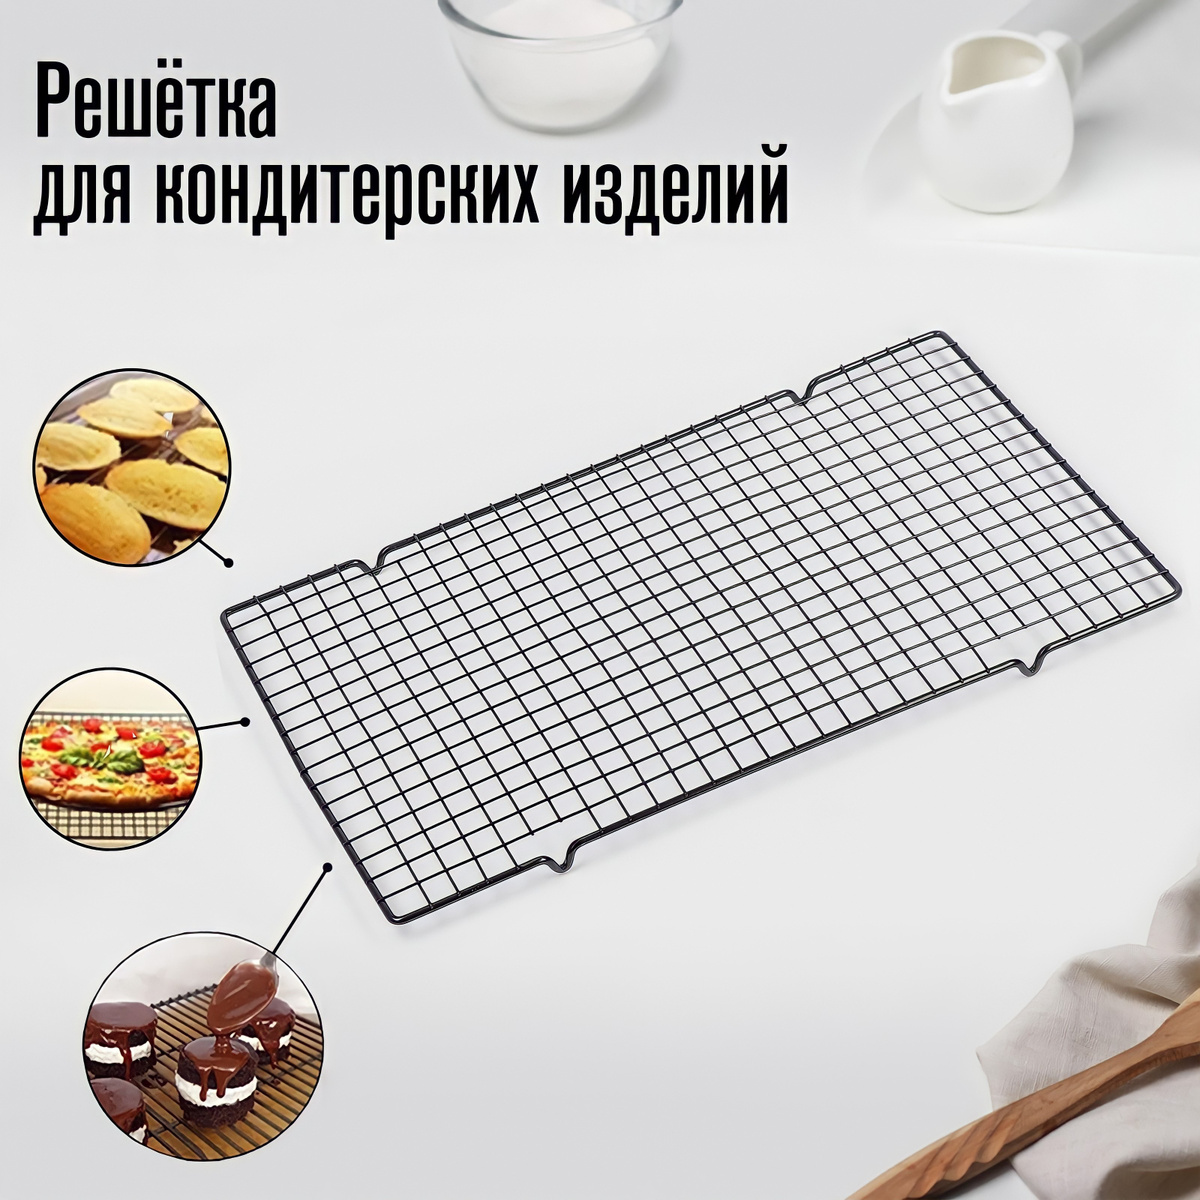  для охлаждения хлеба и выпечки Idea’ Store, 40 см х 25 см, 1 .